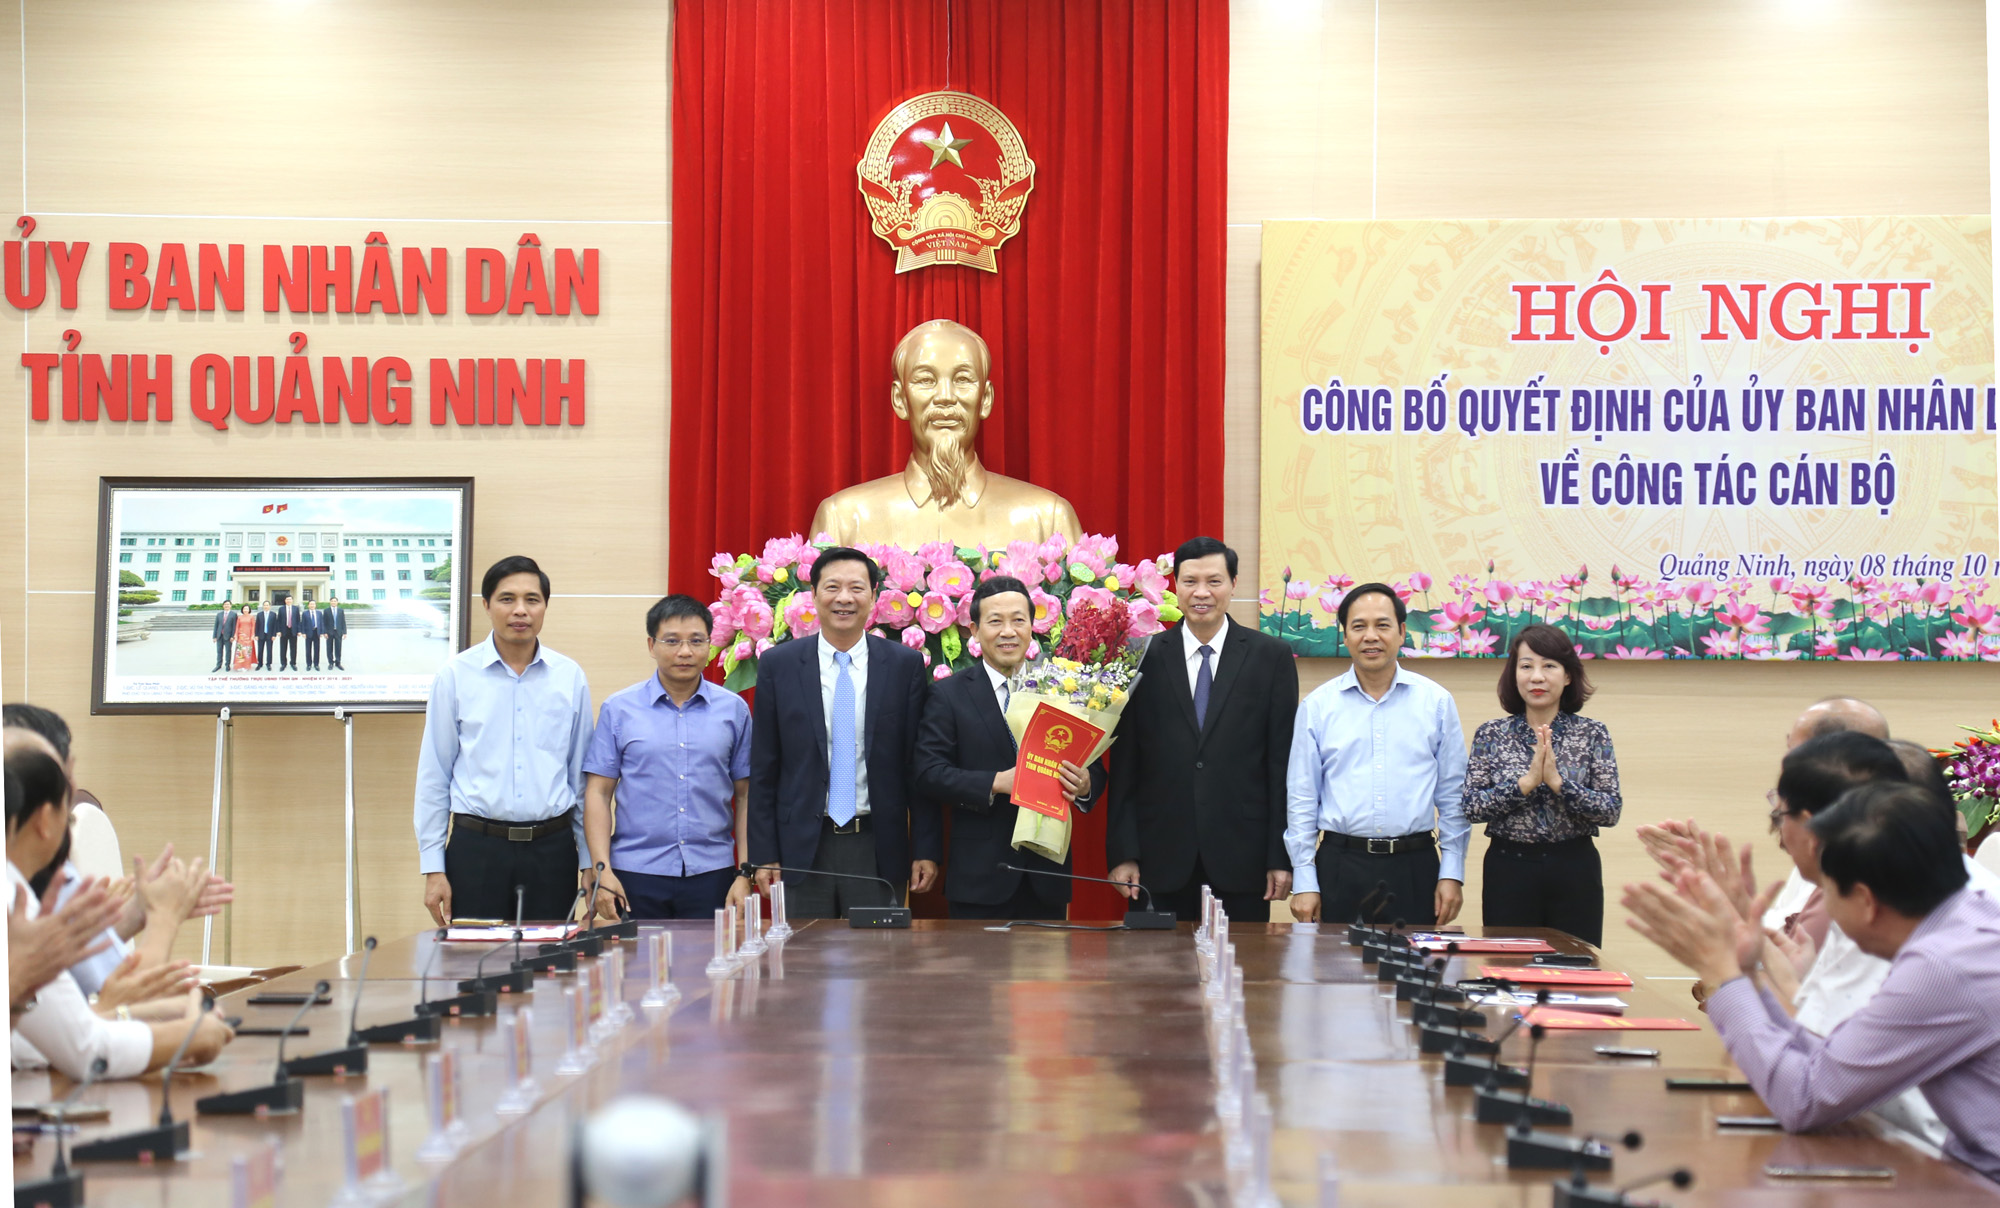 Các đồng chí lãnh đạo tỉnh chúc mừng đồng chí Nguyễn Văn Thành hoàn thành xuất sắc nhiệm vụ.